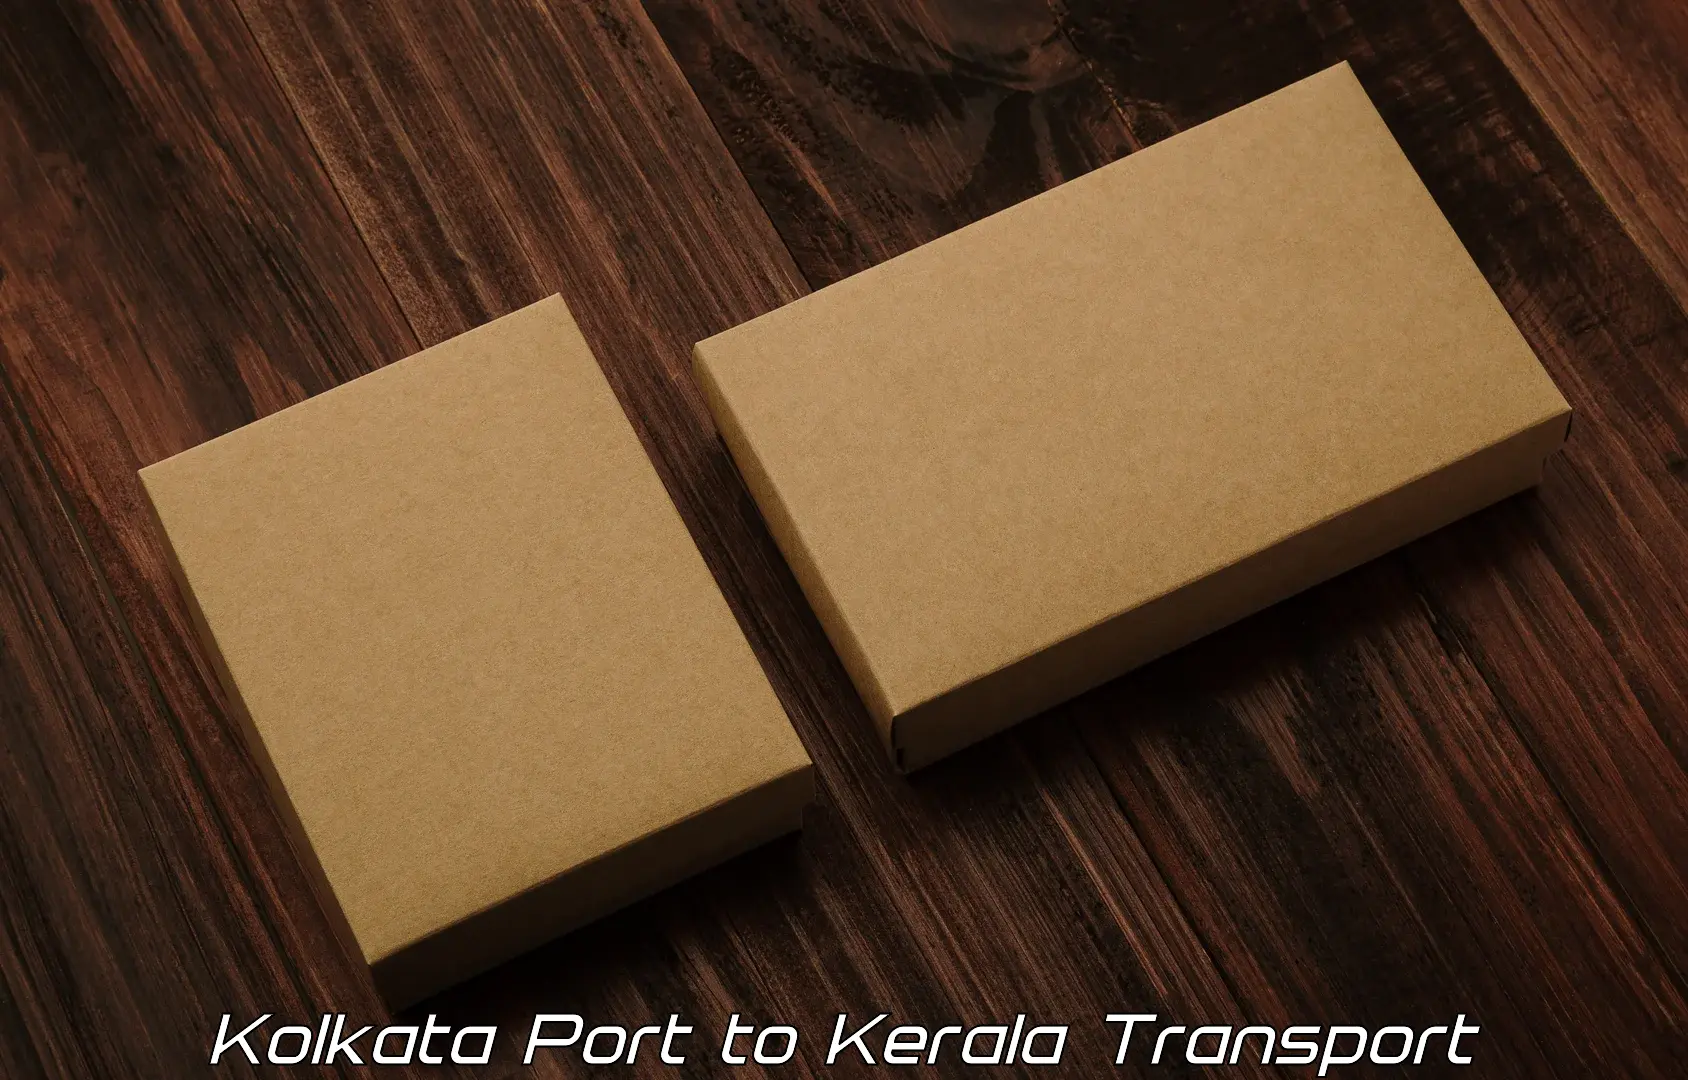 Transportation services in Kolkata Port to Panayathamparamba